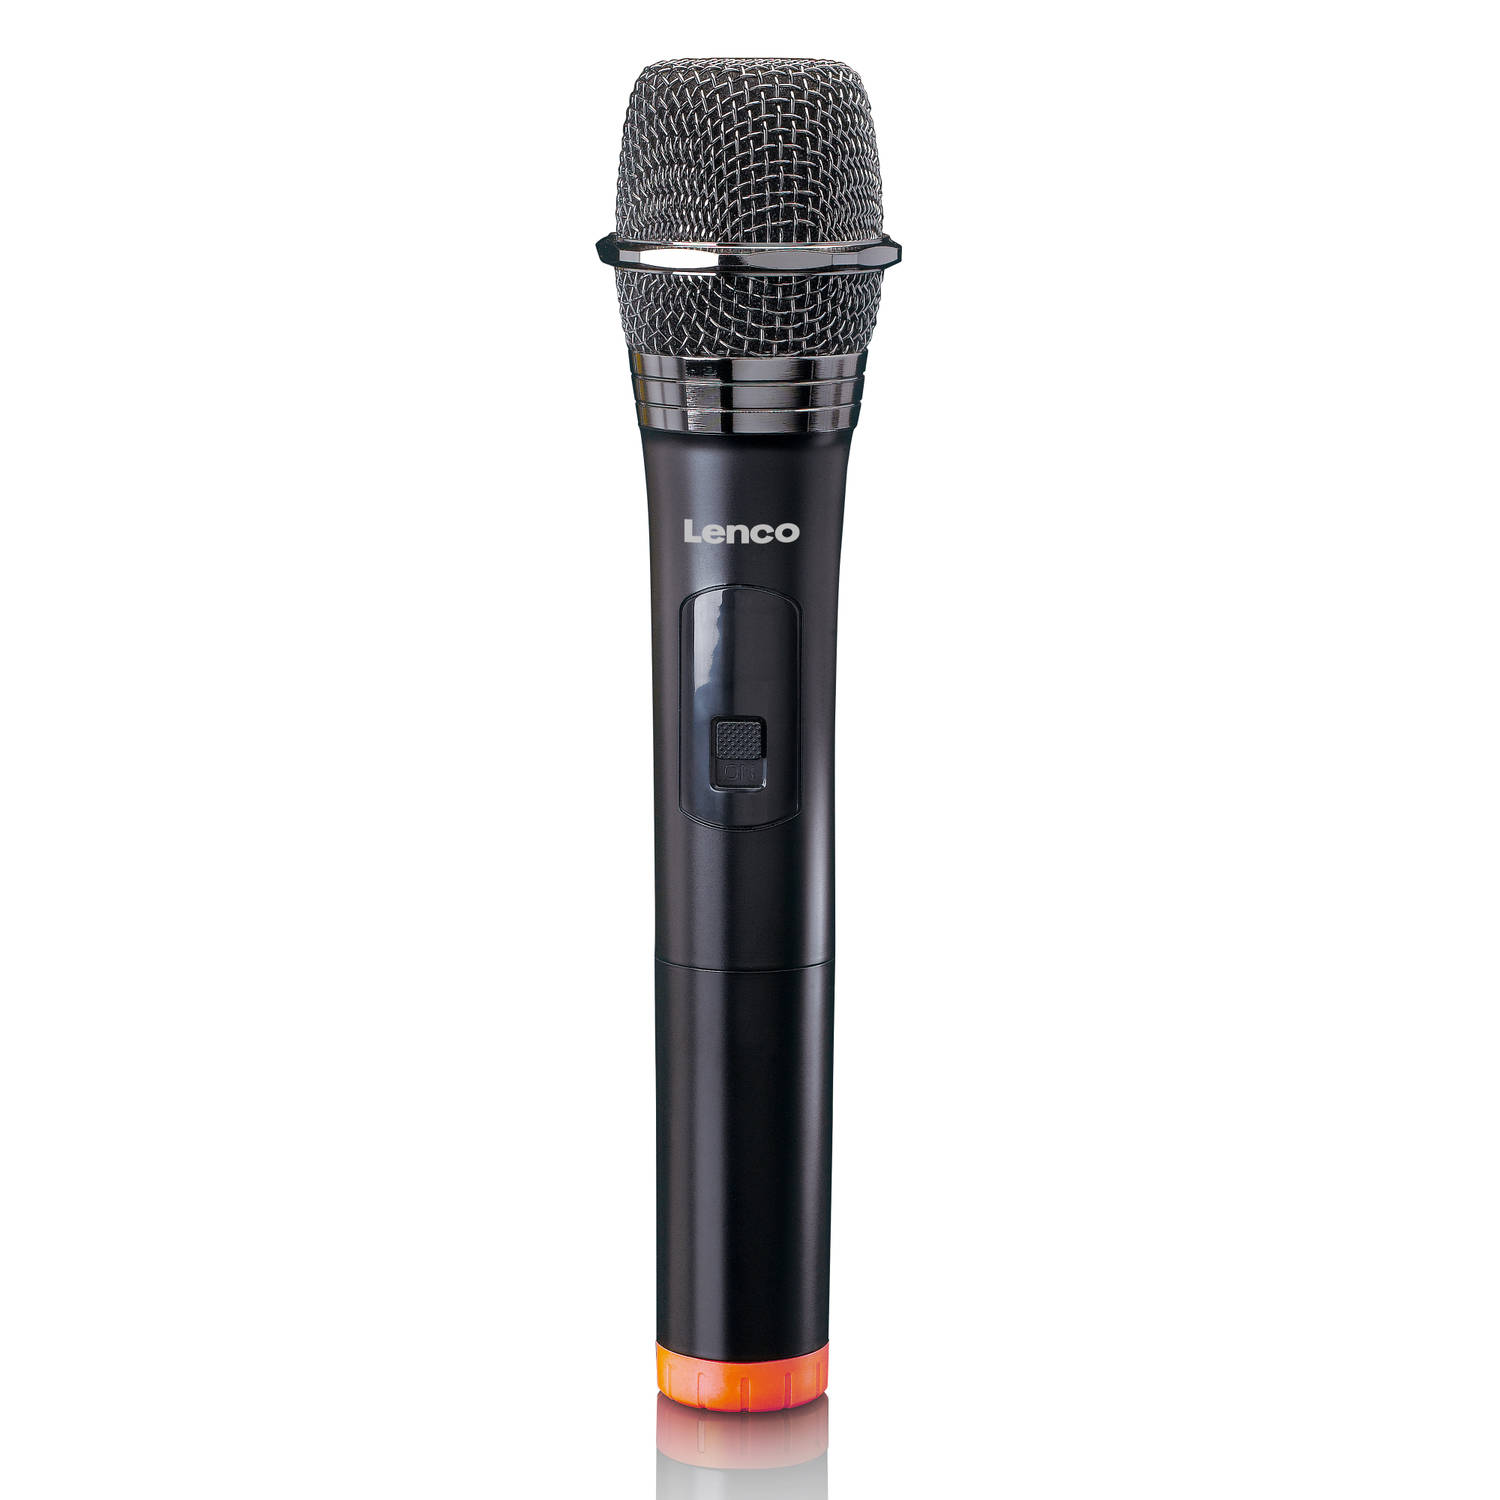 Lenco Microfoon MCW-011BK Kabelloses Mikrofon mit 6,3 mm Receiver